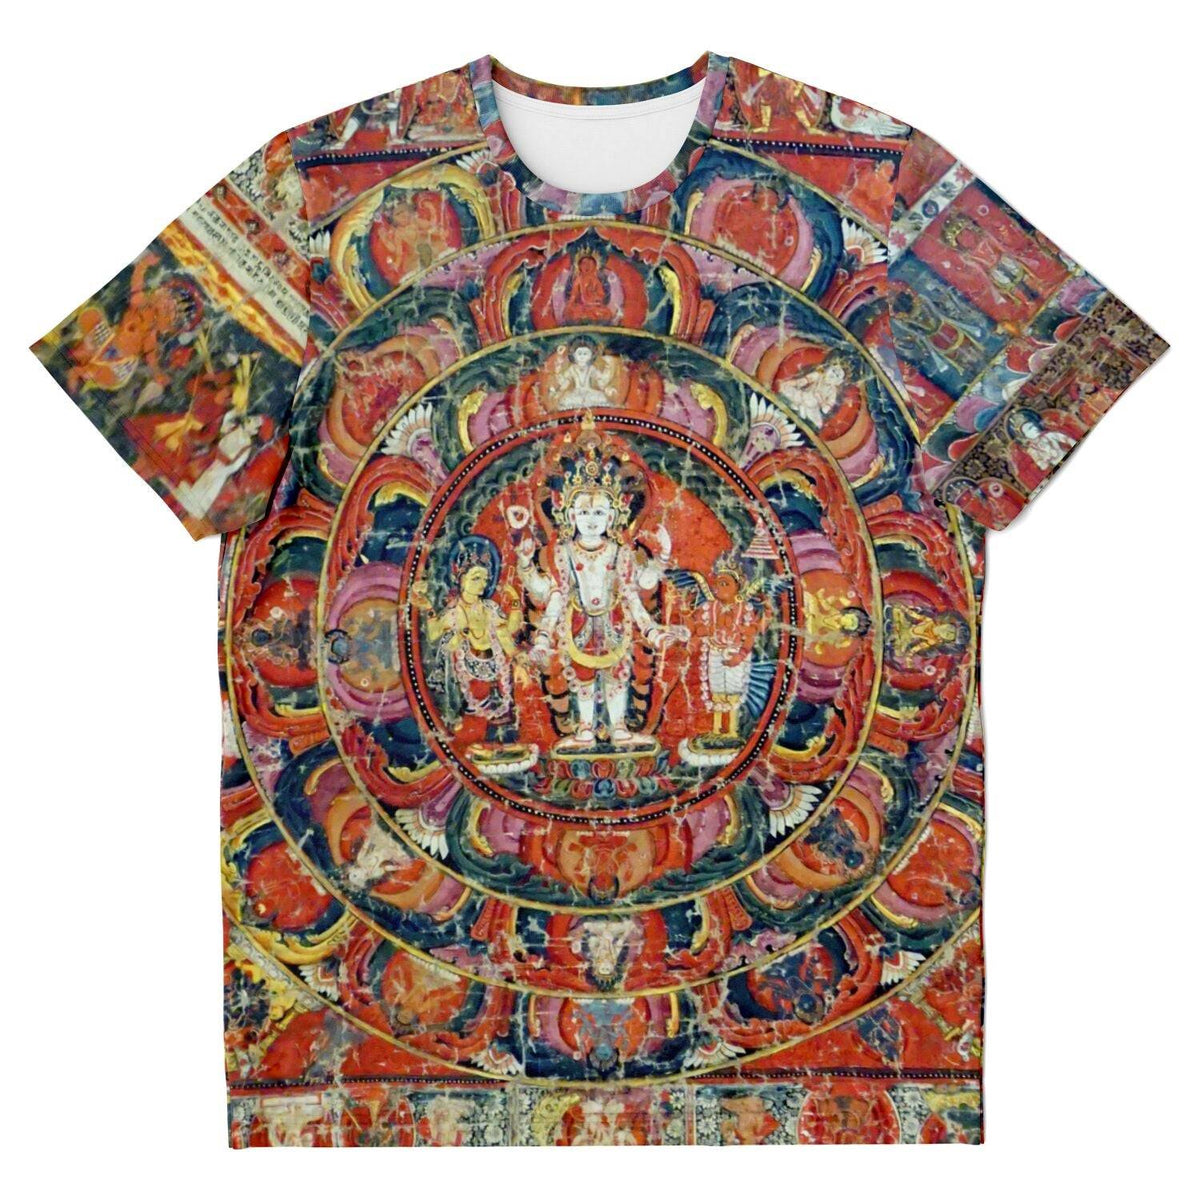 Indra and Garuda Nepali Buddhist Mandala Thangka | Buddhist and Hindu Deity | Nature &amp; Wisdom Mythology Graphic Art T-Shirt - Sacred Surreal